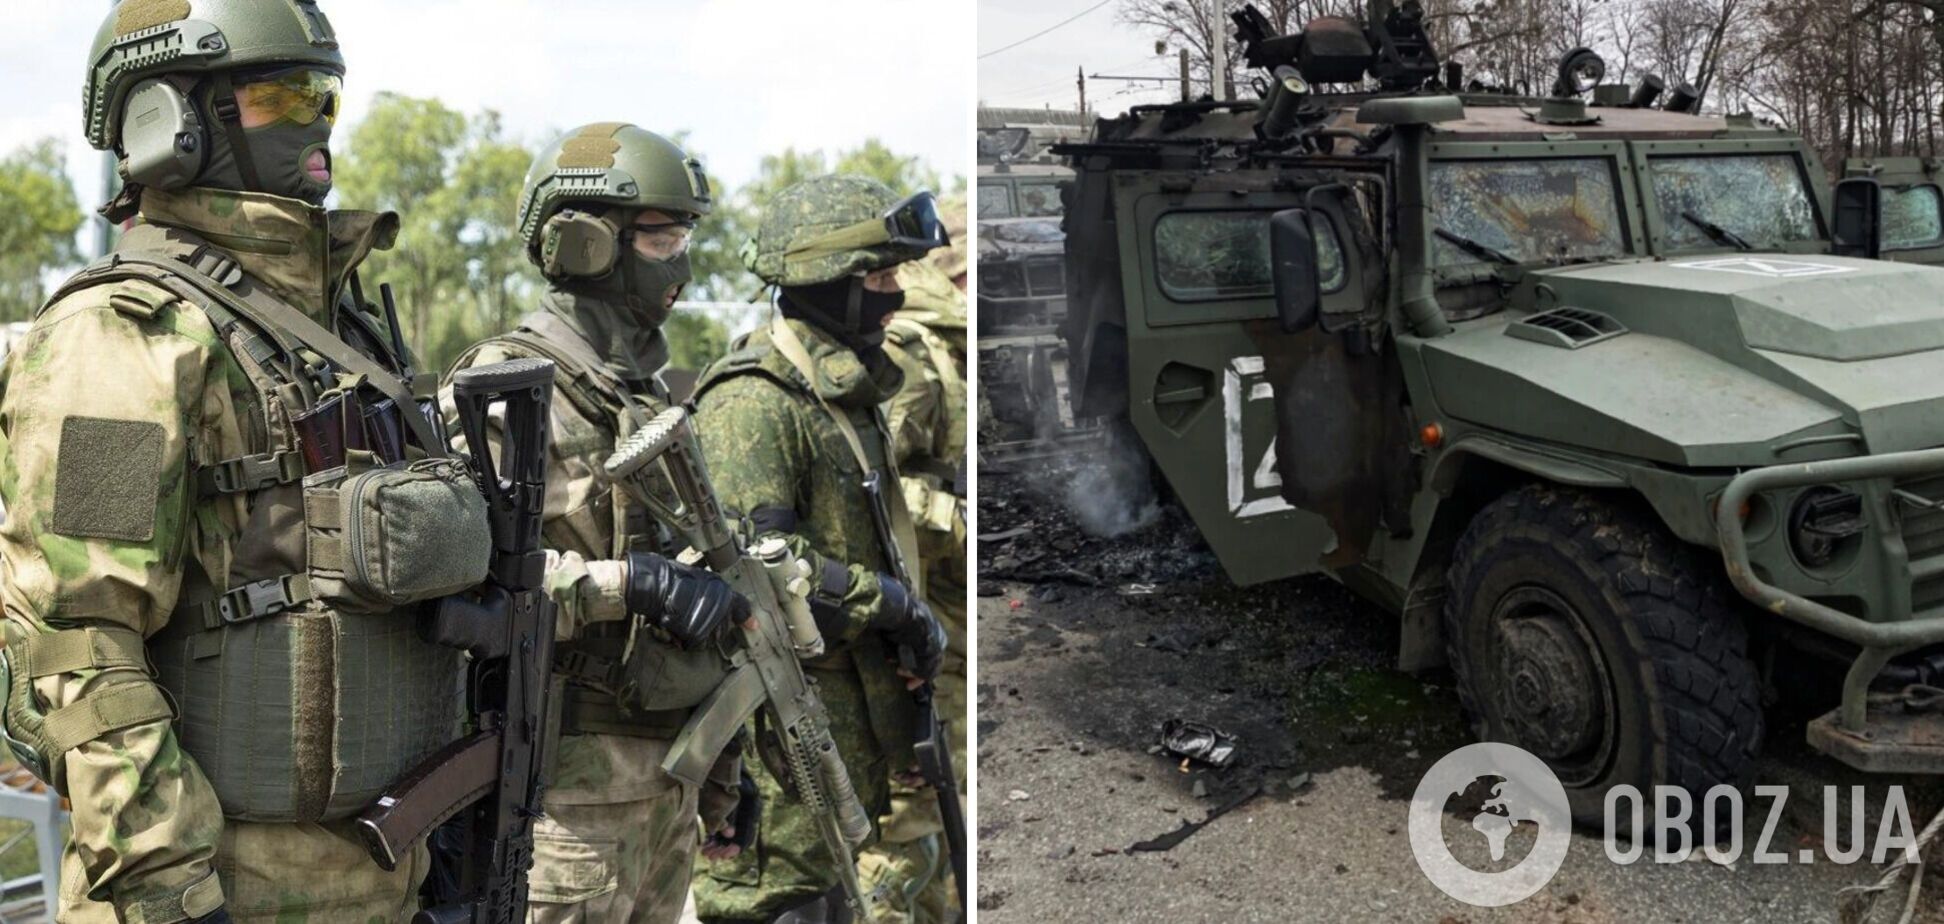 Спецназ Беларуси не будет участвовать в войне против Украины, военные РФ устроили бунт в лагере на границе – Генштаб